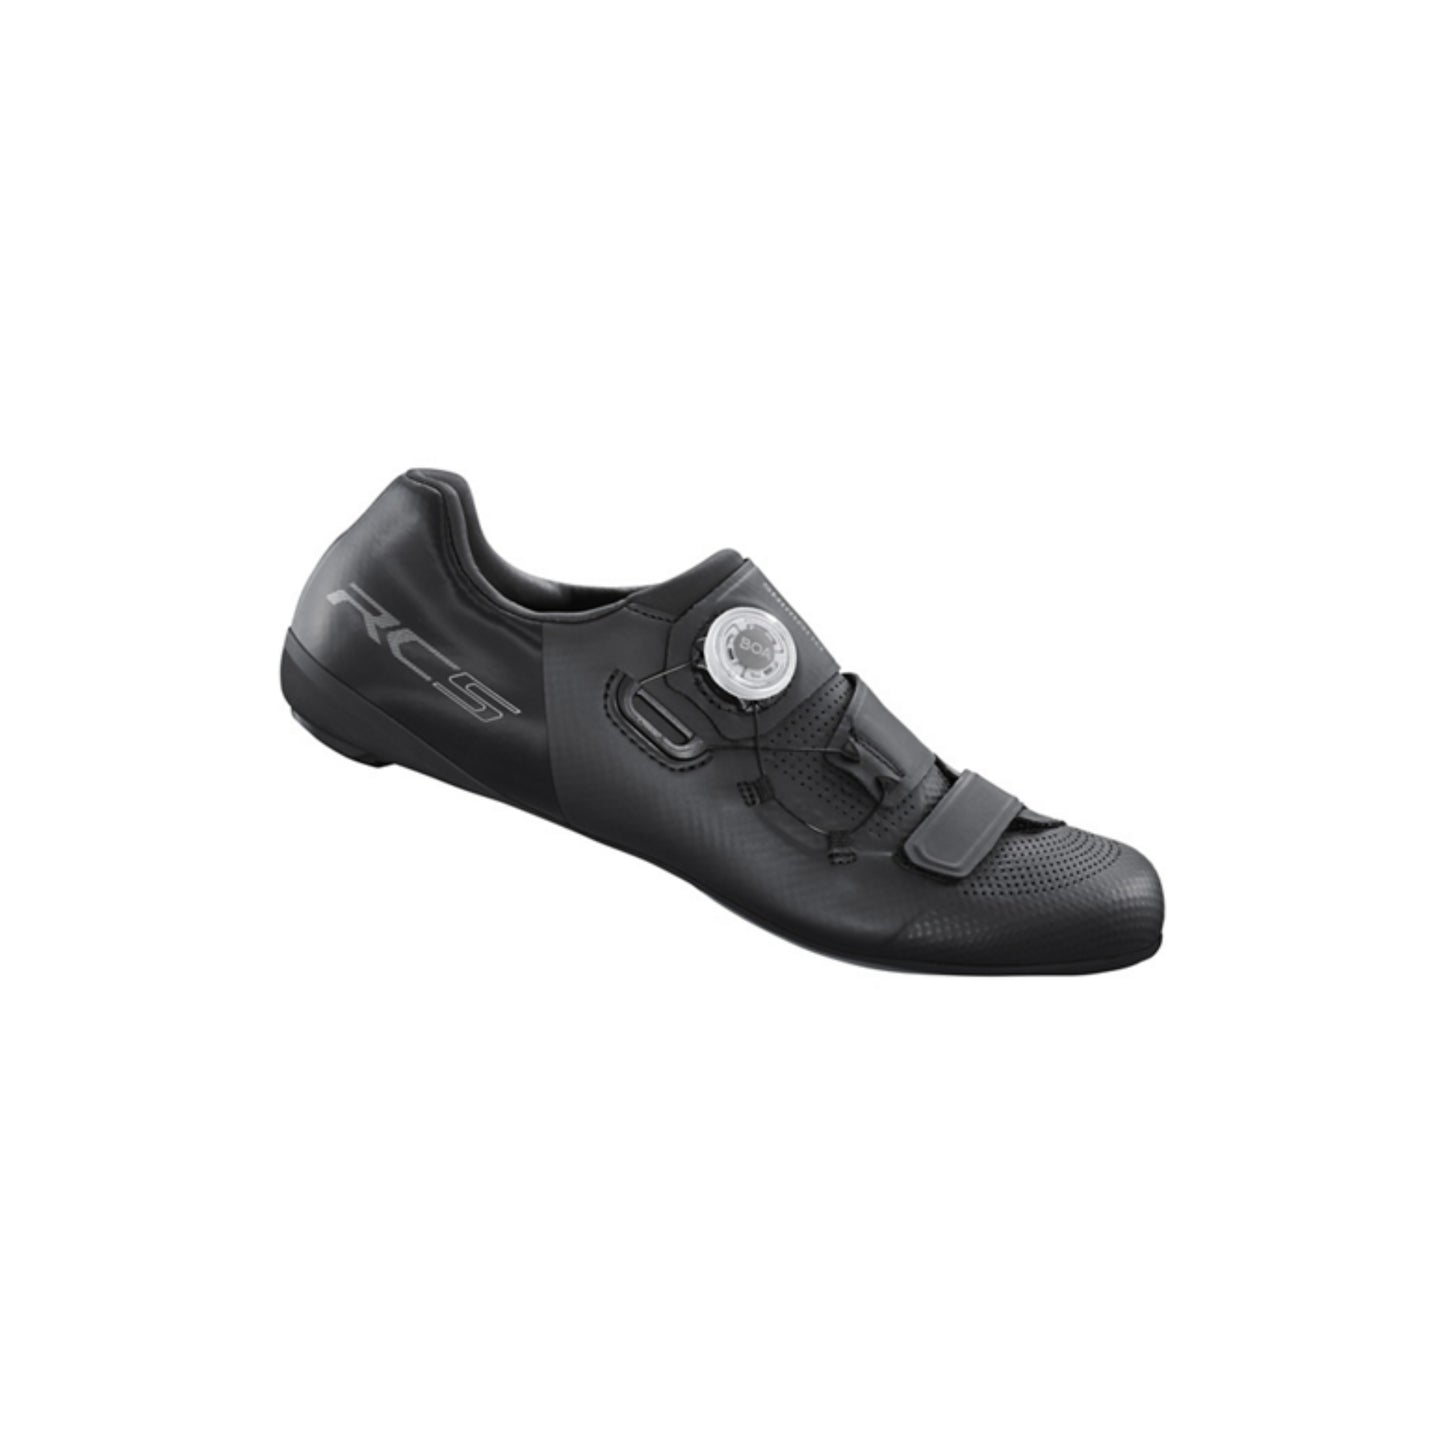 Zapatillas Shimano Rc502 Black